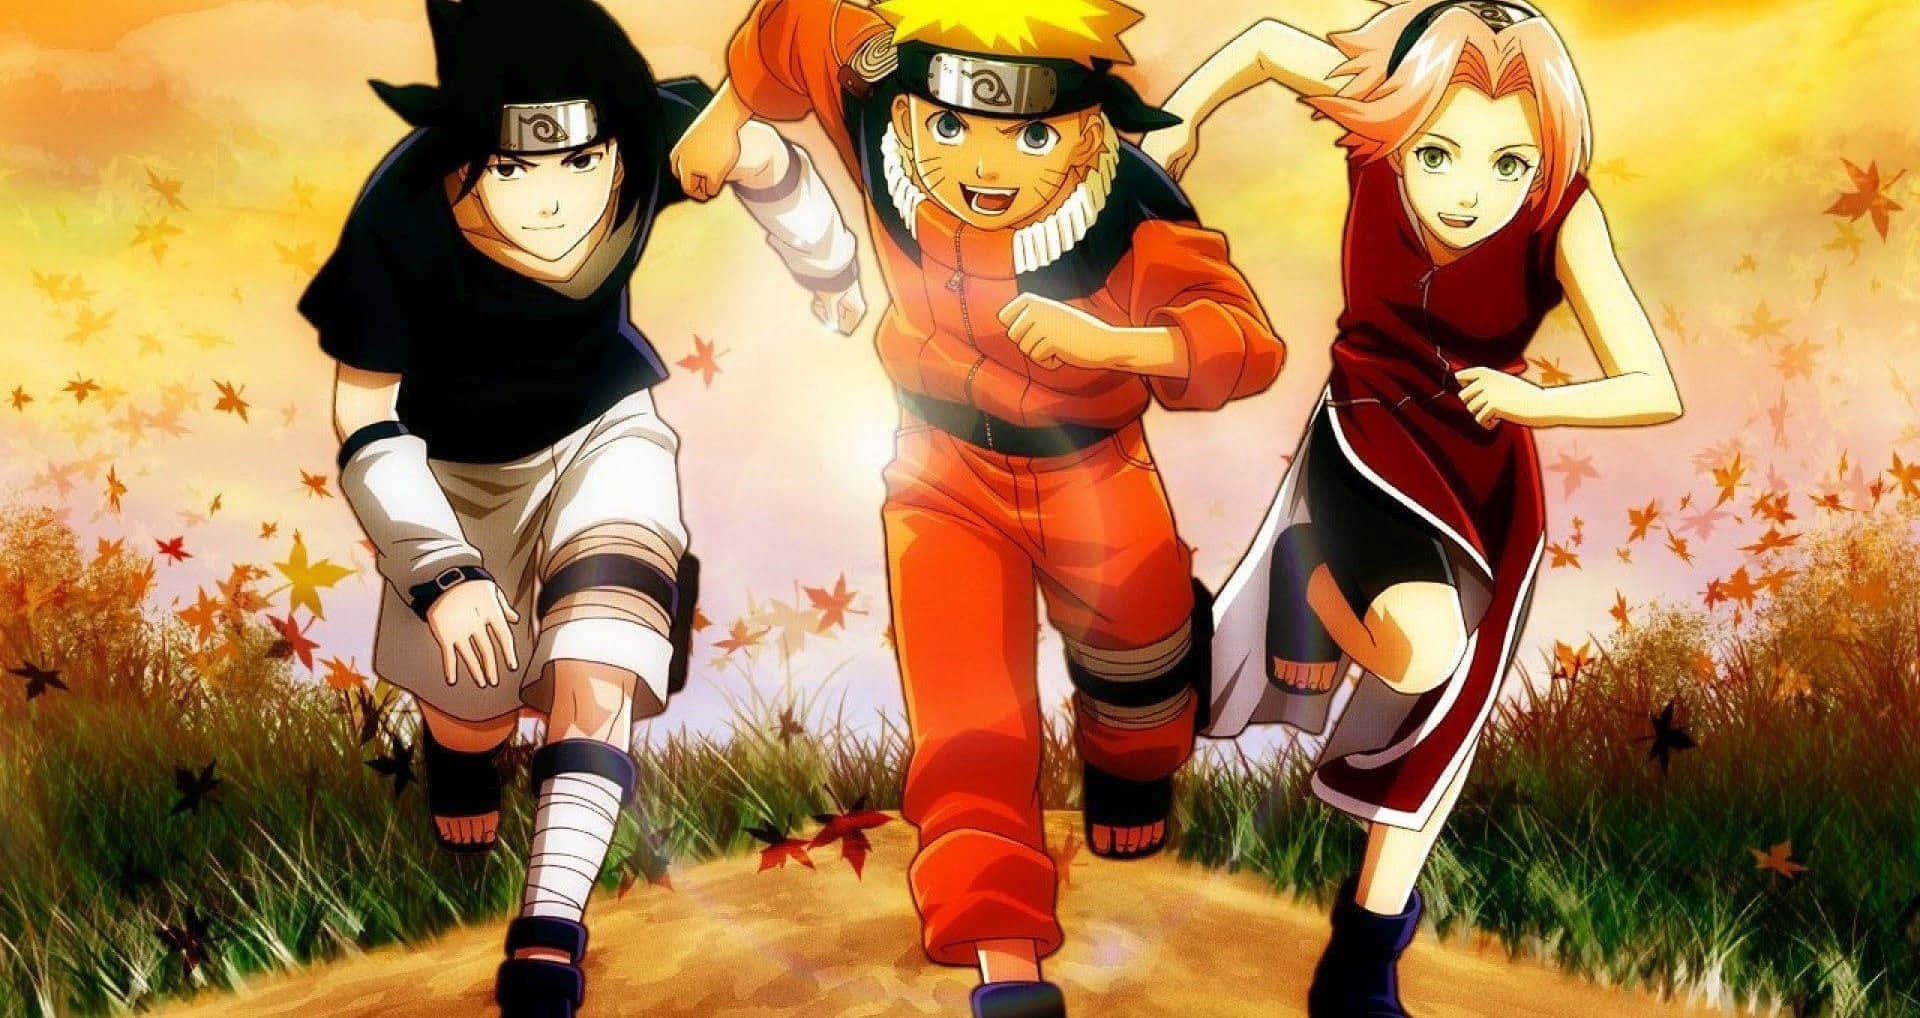 Fondosde Pantalla De Naruto - Fondos De Pantalla De Naruto Fondo de pantalla